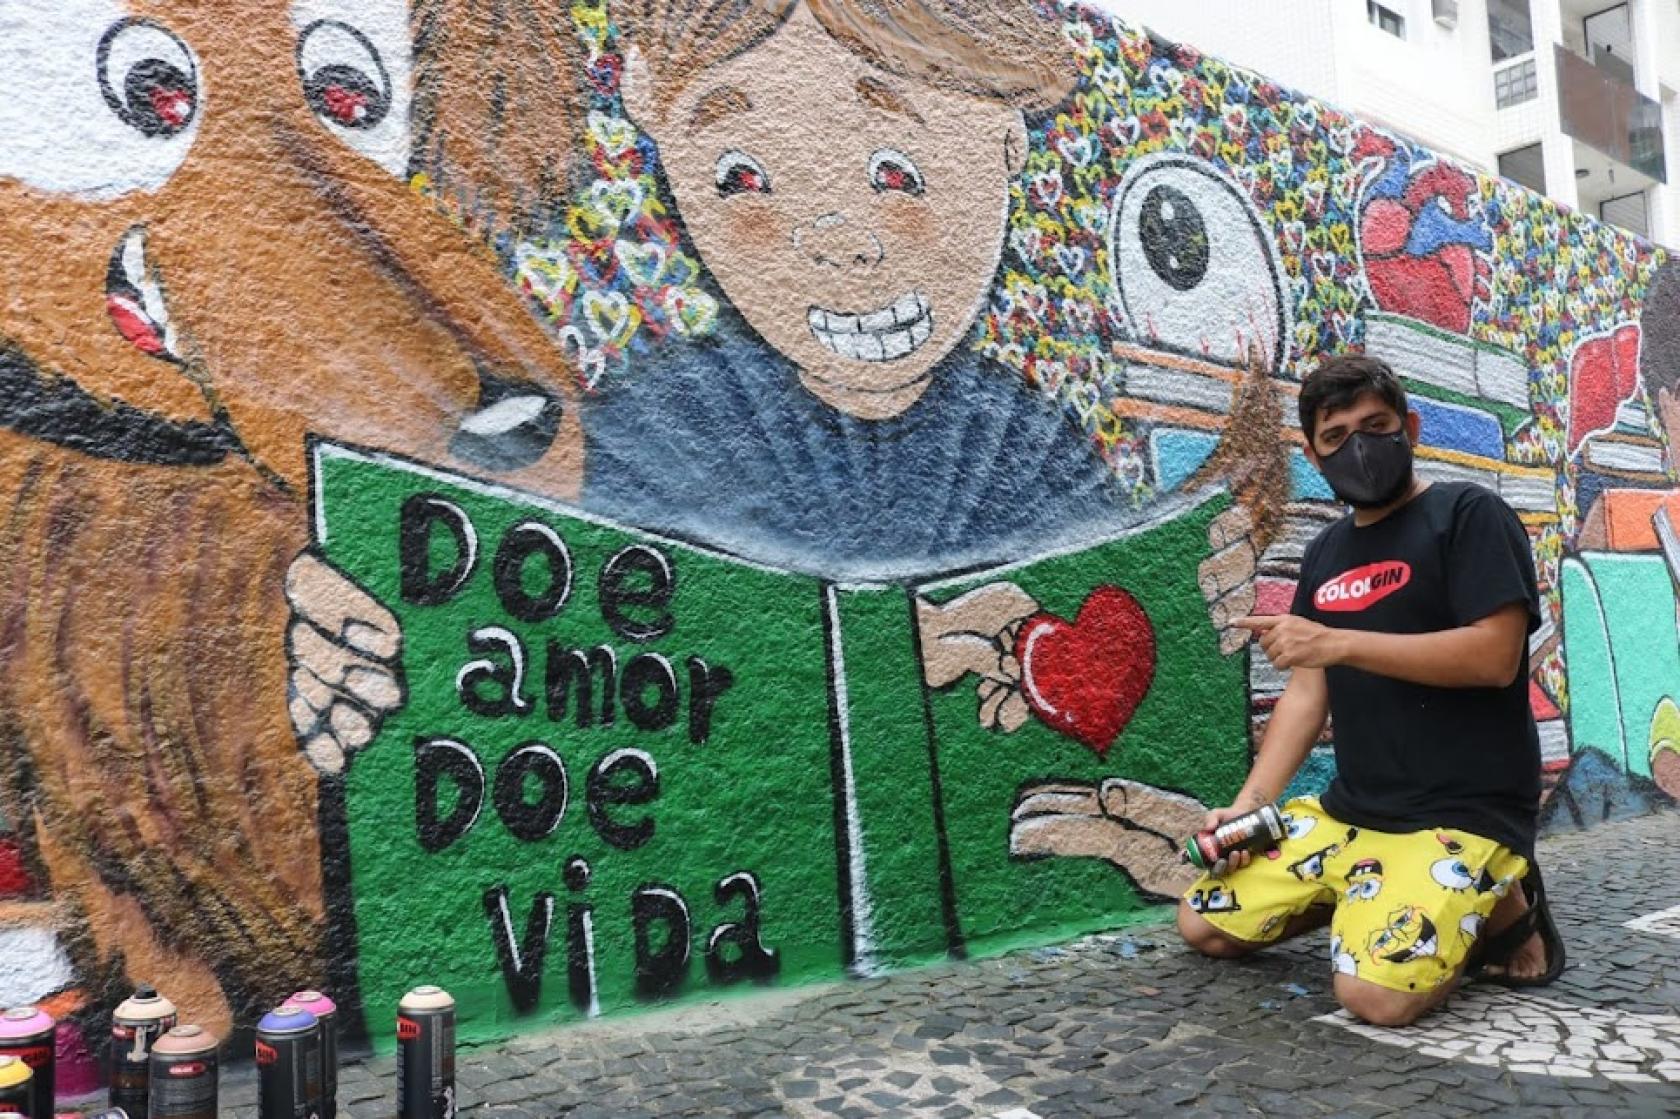 Mural grafitado com livro aberto onde se lê Doe Amor doe vida. O artista etá agachado no chão, segurando uma lata de tinta spray. #paratodosverem